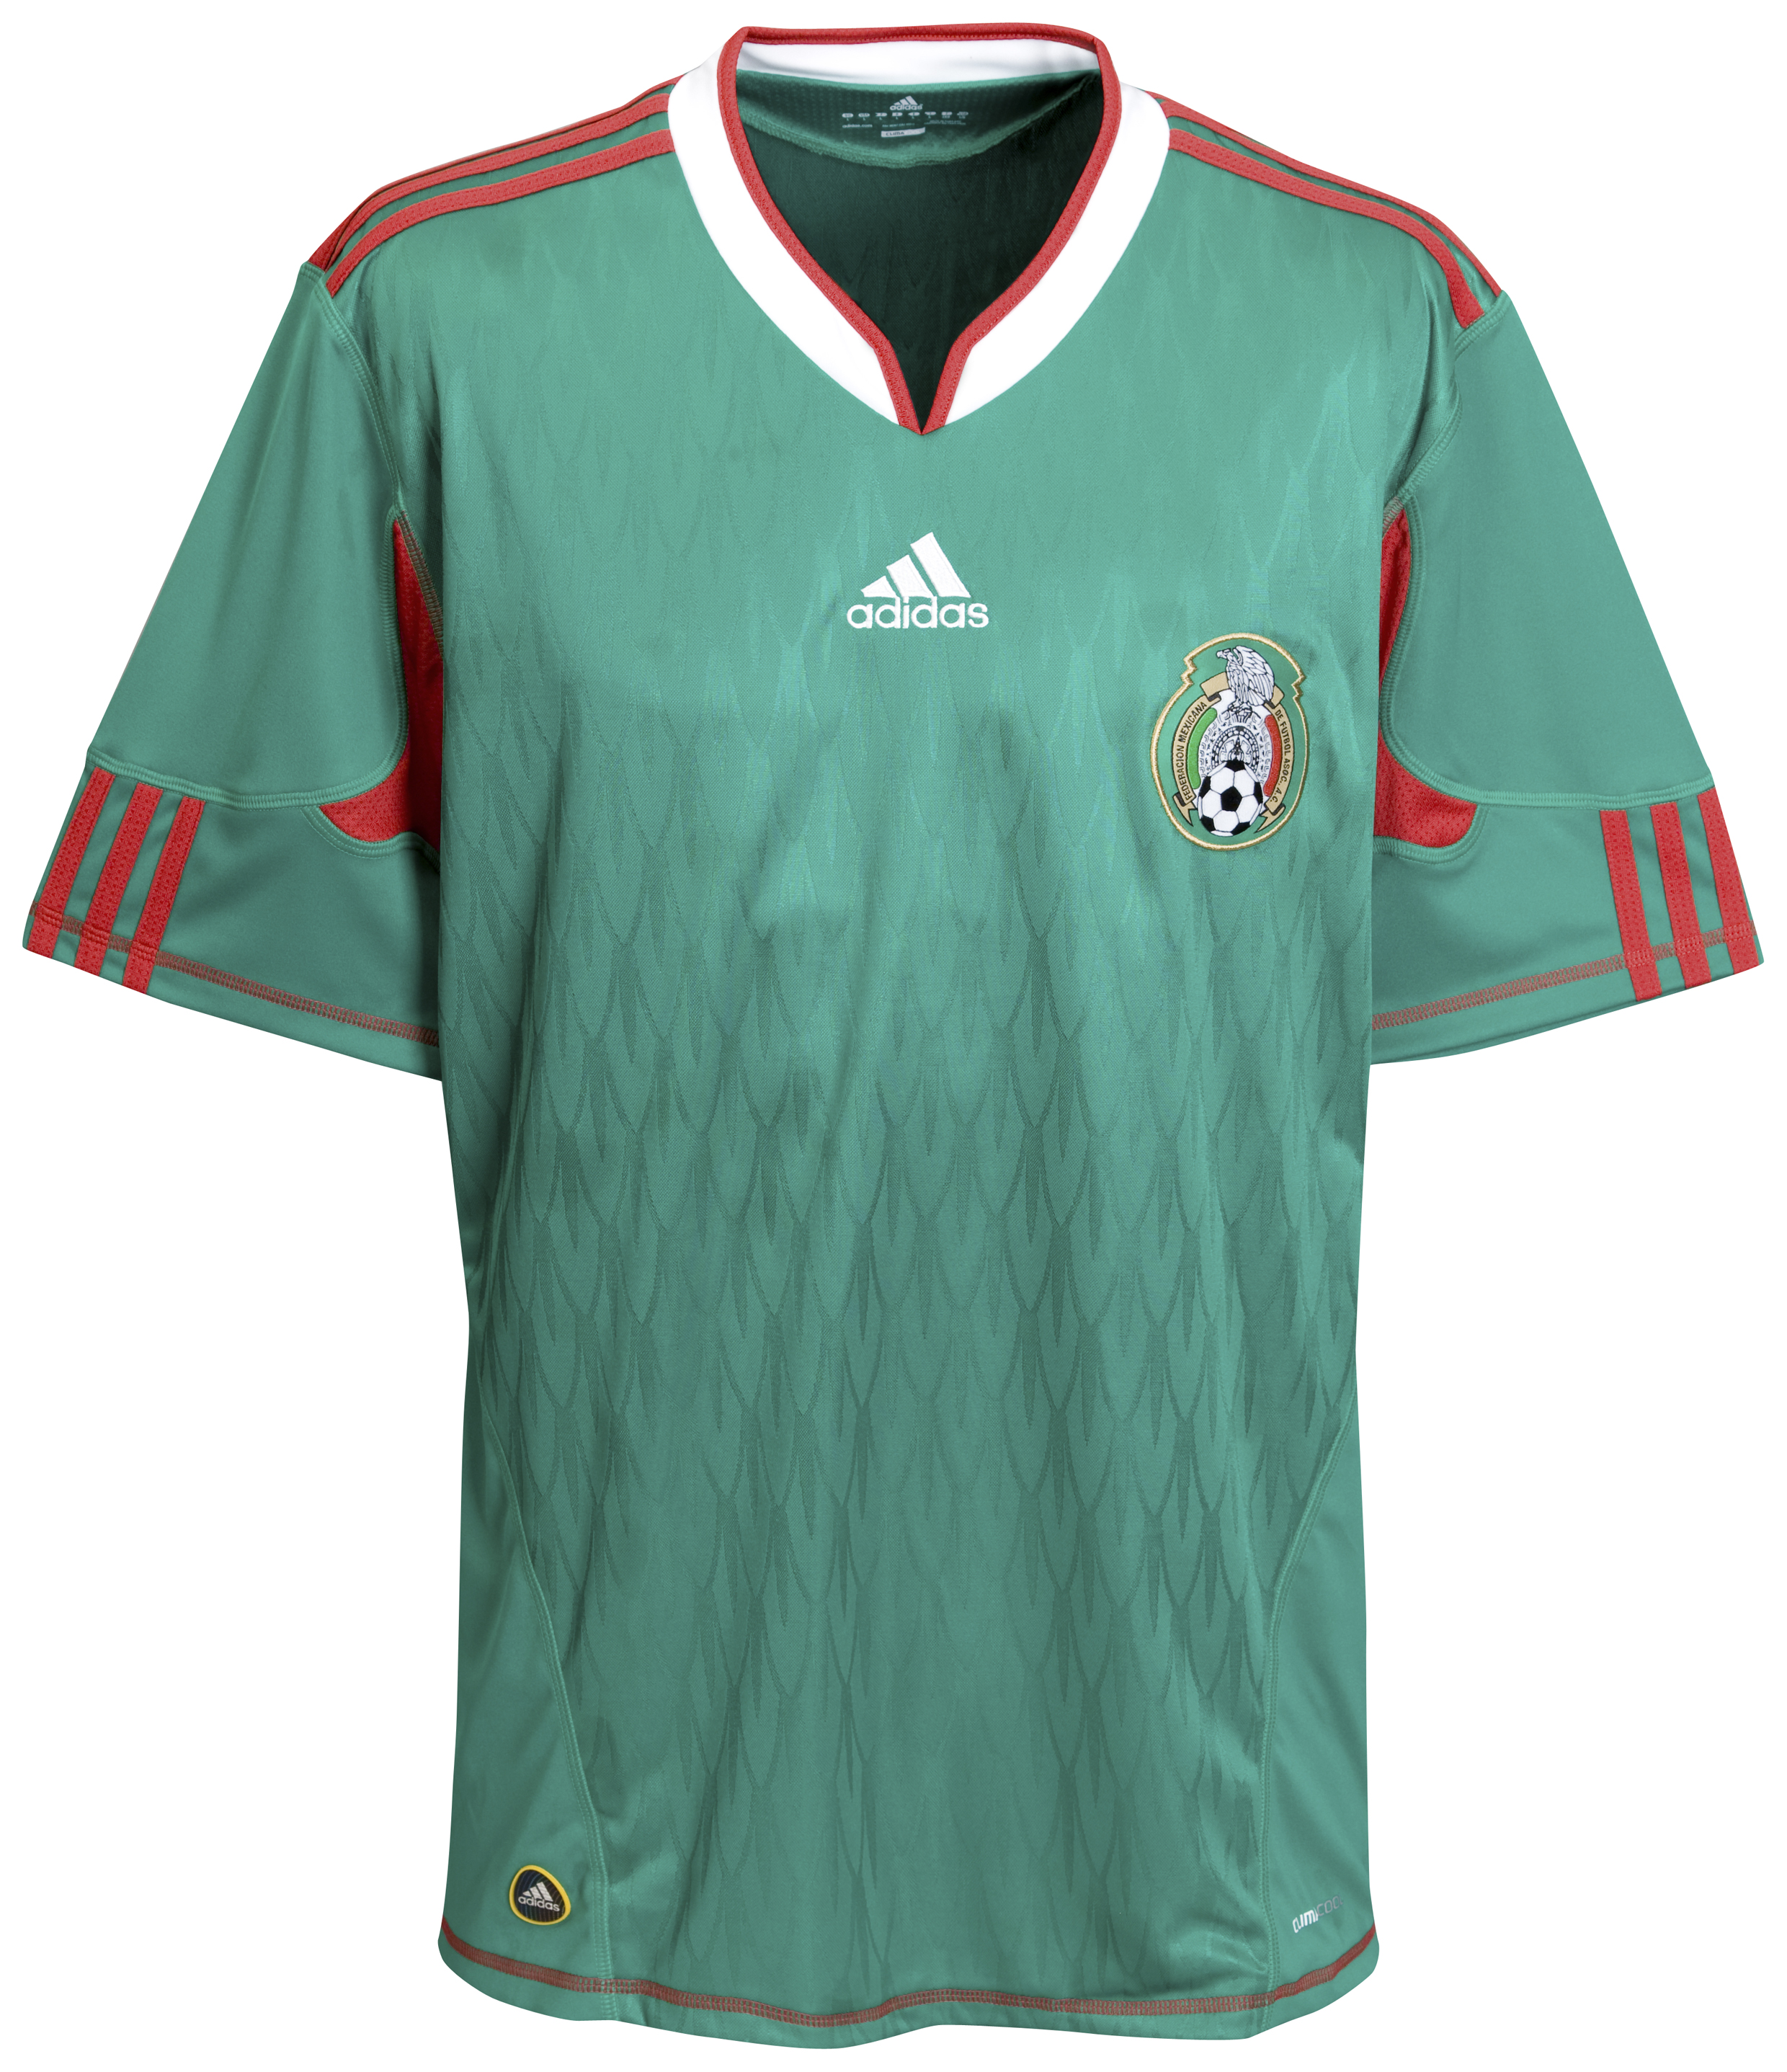 ملابس المنتخبات لكأس العالم ‎(2010)‎ Kb-63745